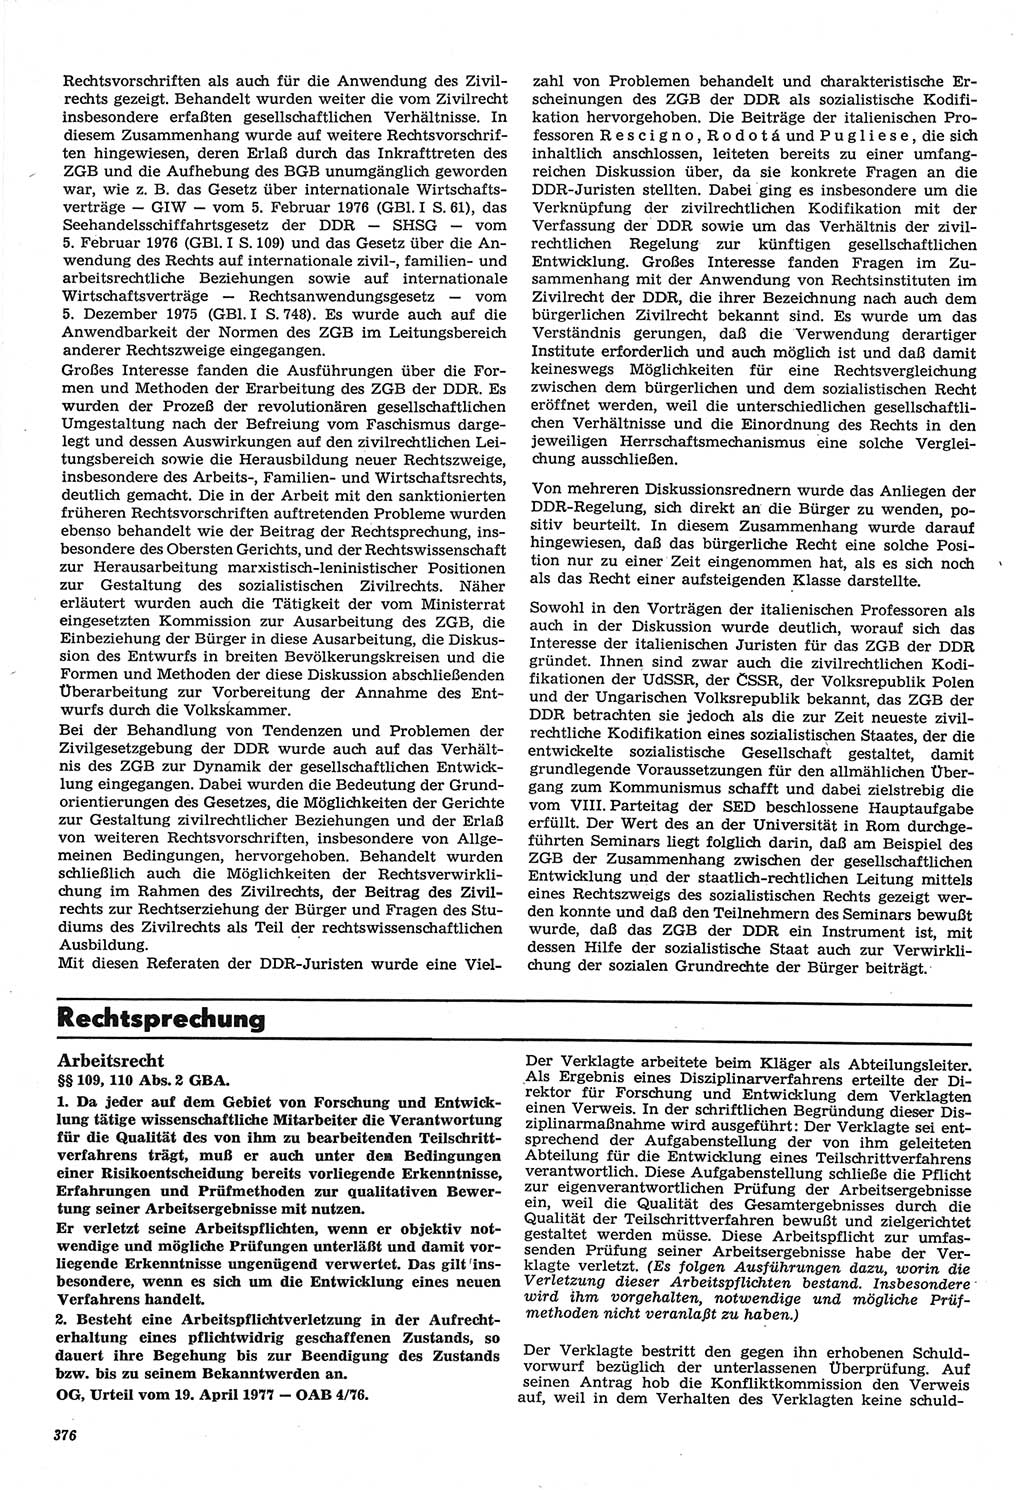 Neue Justiz (NJ), Zeitschrift für Recht und Rechtswissenschaft-Zeitschrift, sozialistisches Recht und Gesetzlichkeit, 31. Jahrgang 1977, Seite 376 (NJ DDR 1977, S. 376)